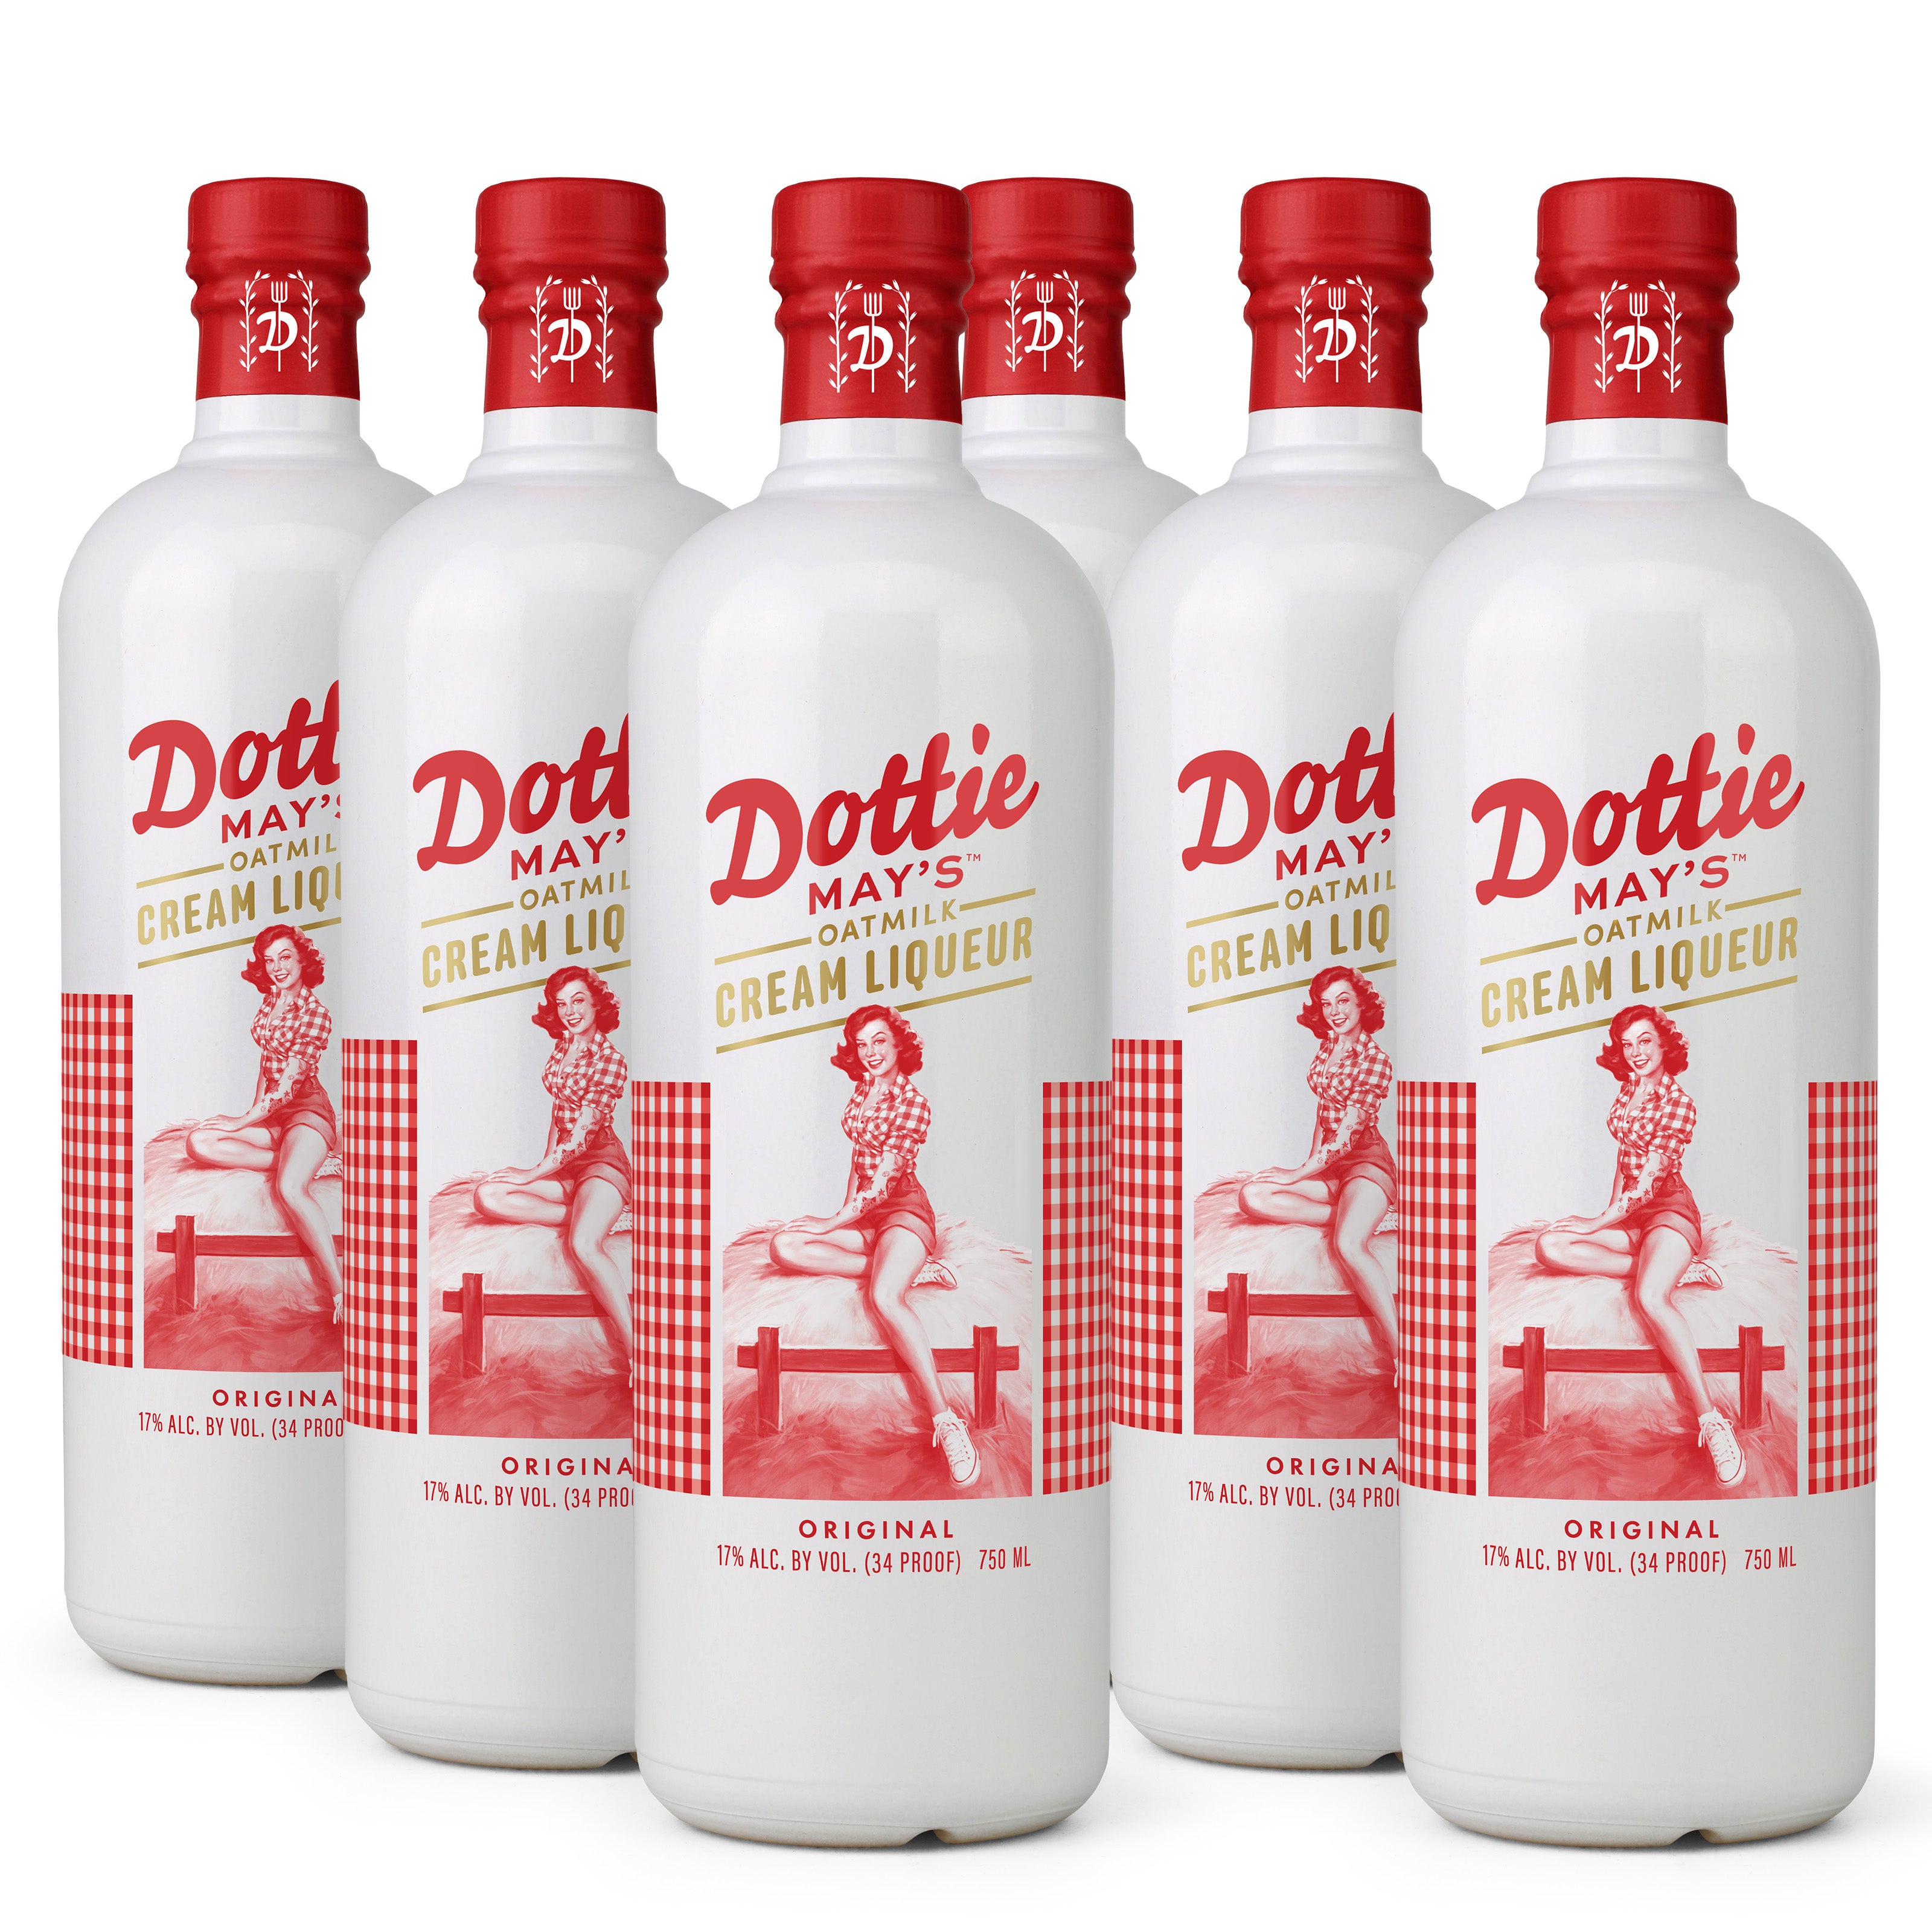 Dottie May's™ Oatmilk Cream Liqueur (6 Bottles) – Drink Dotties